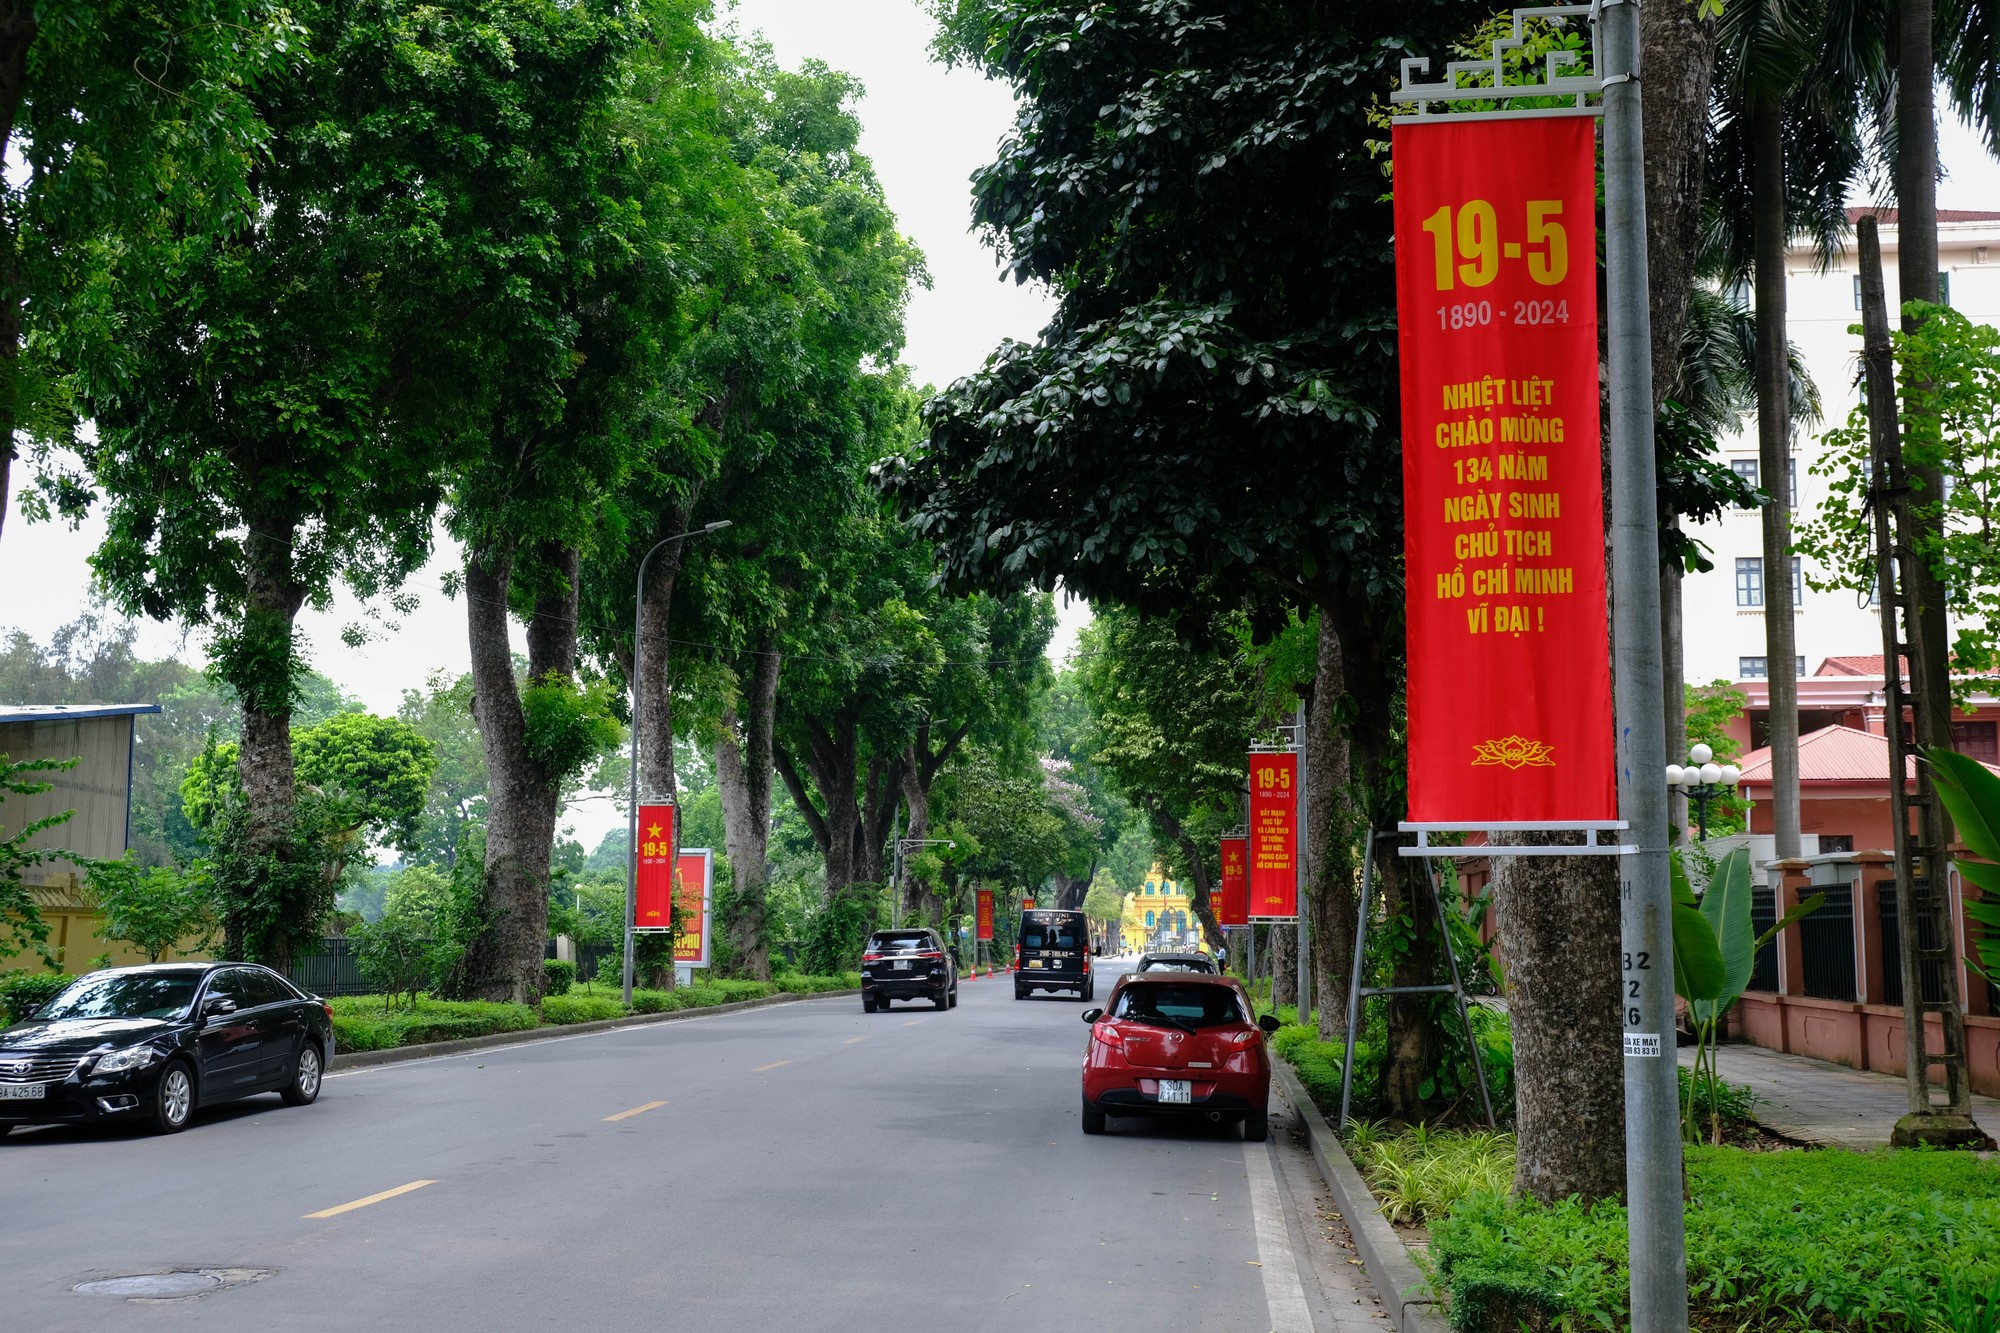 Hà Nội rực rỡ cờ hoa kỷ niệm 134 năm ngày sinh Chủ tịch Hồ Chí Minh